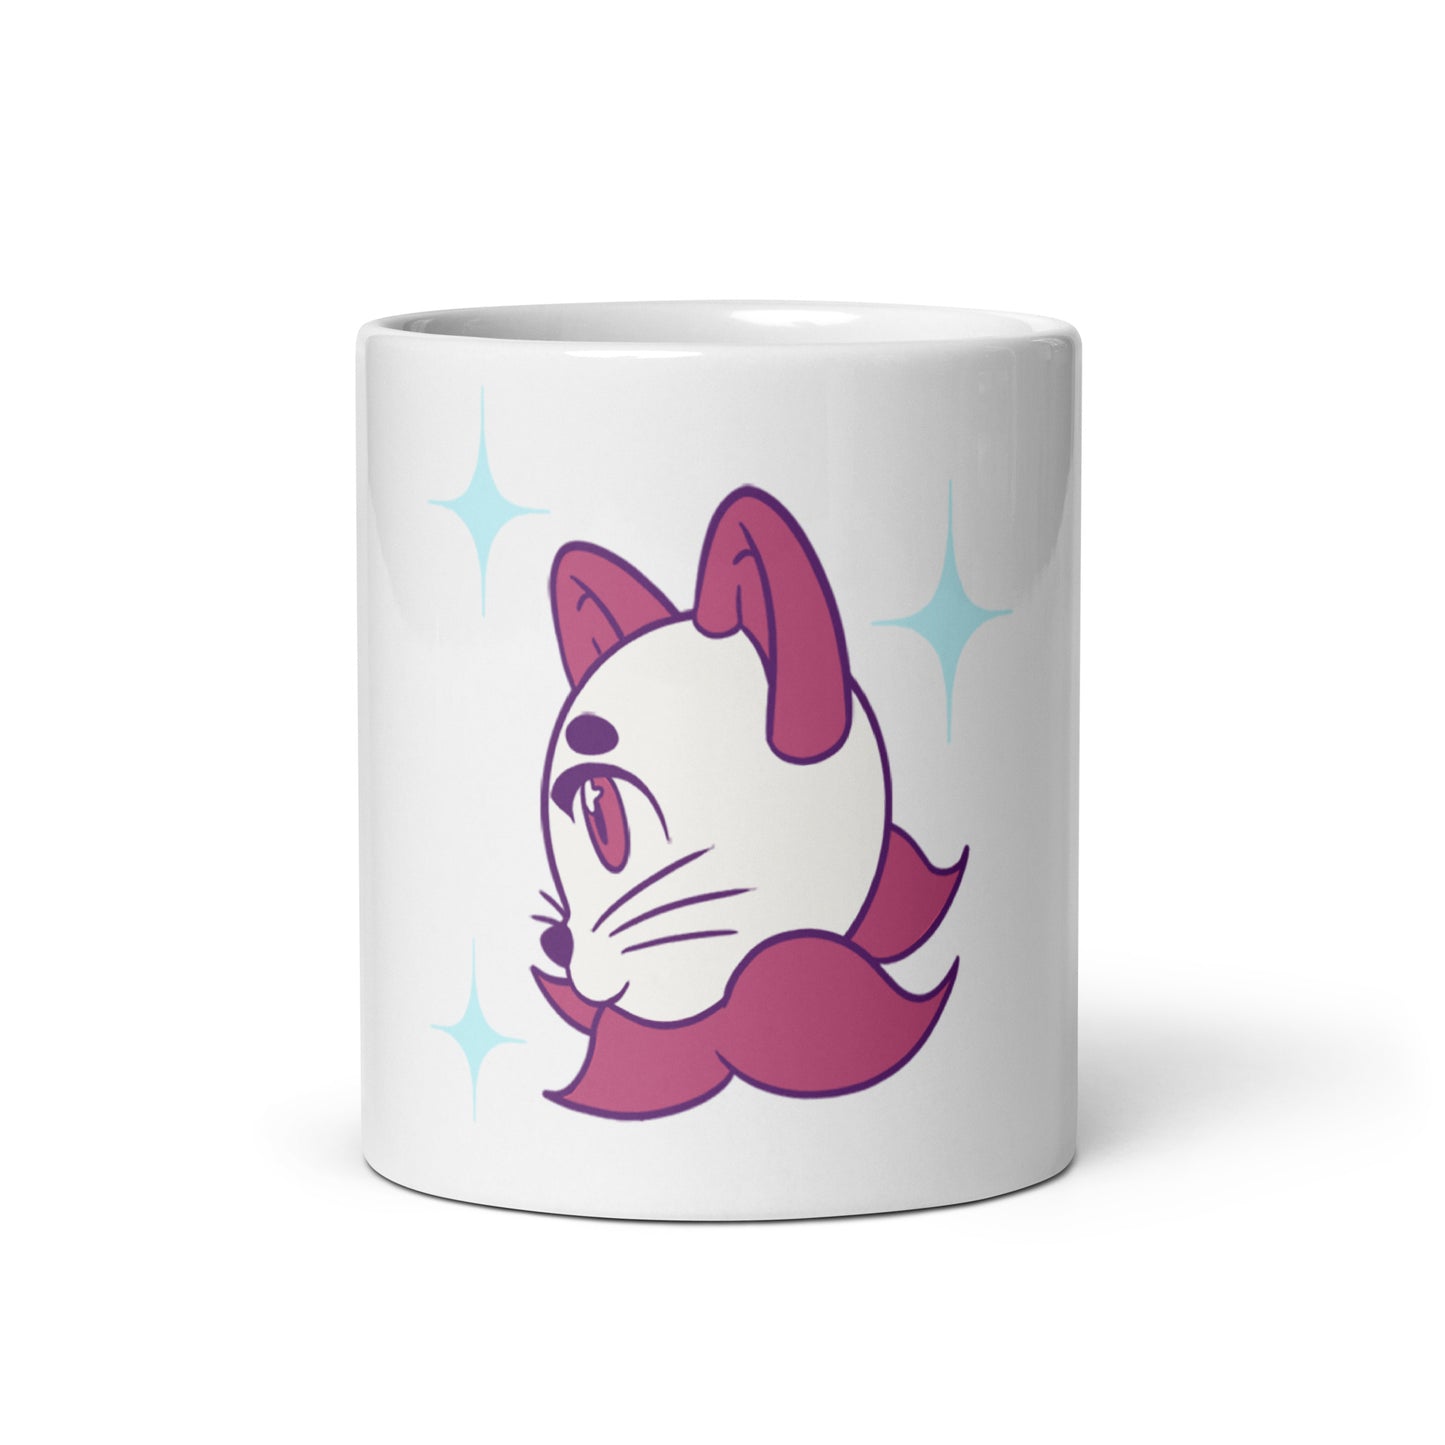 Star Cat mug